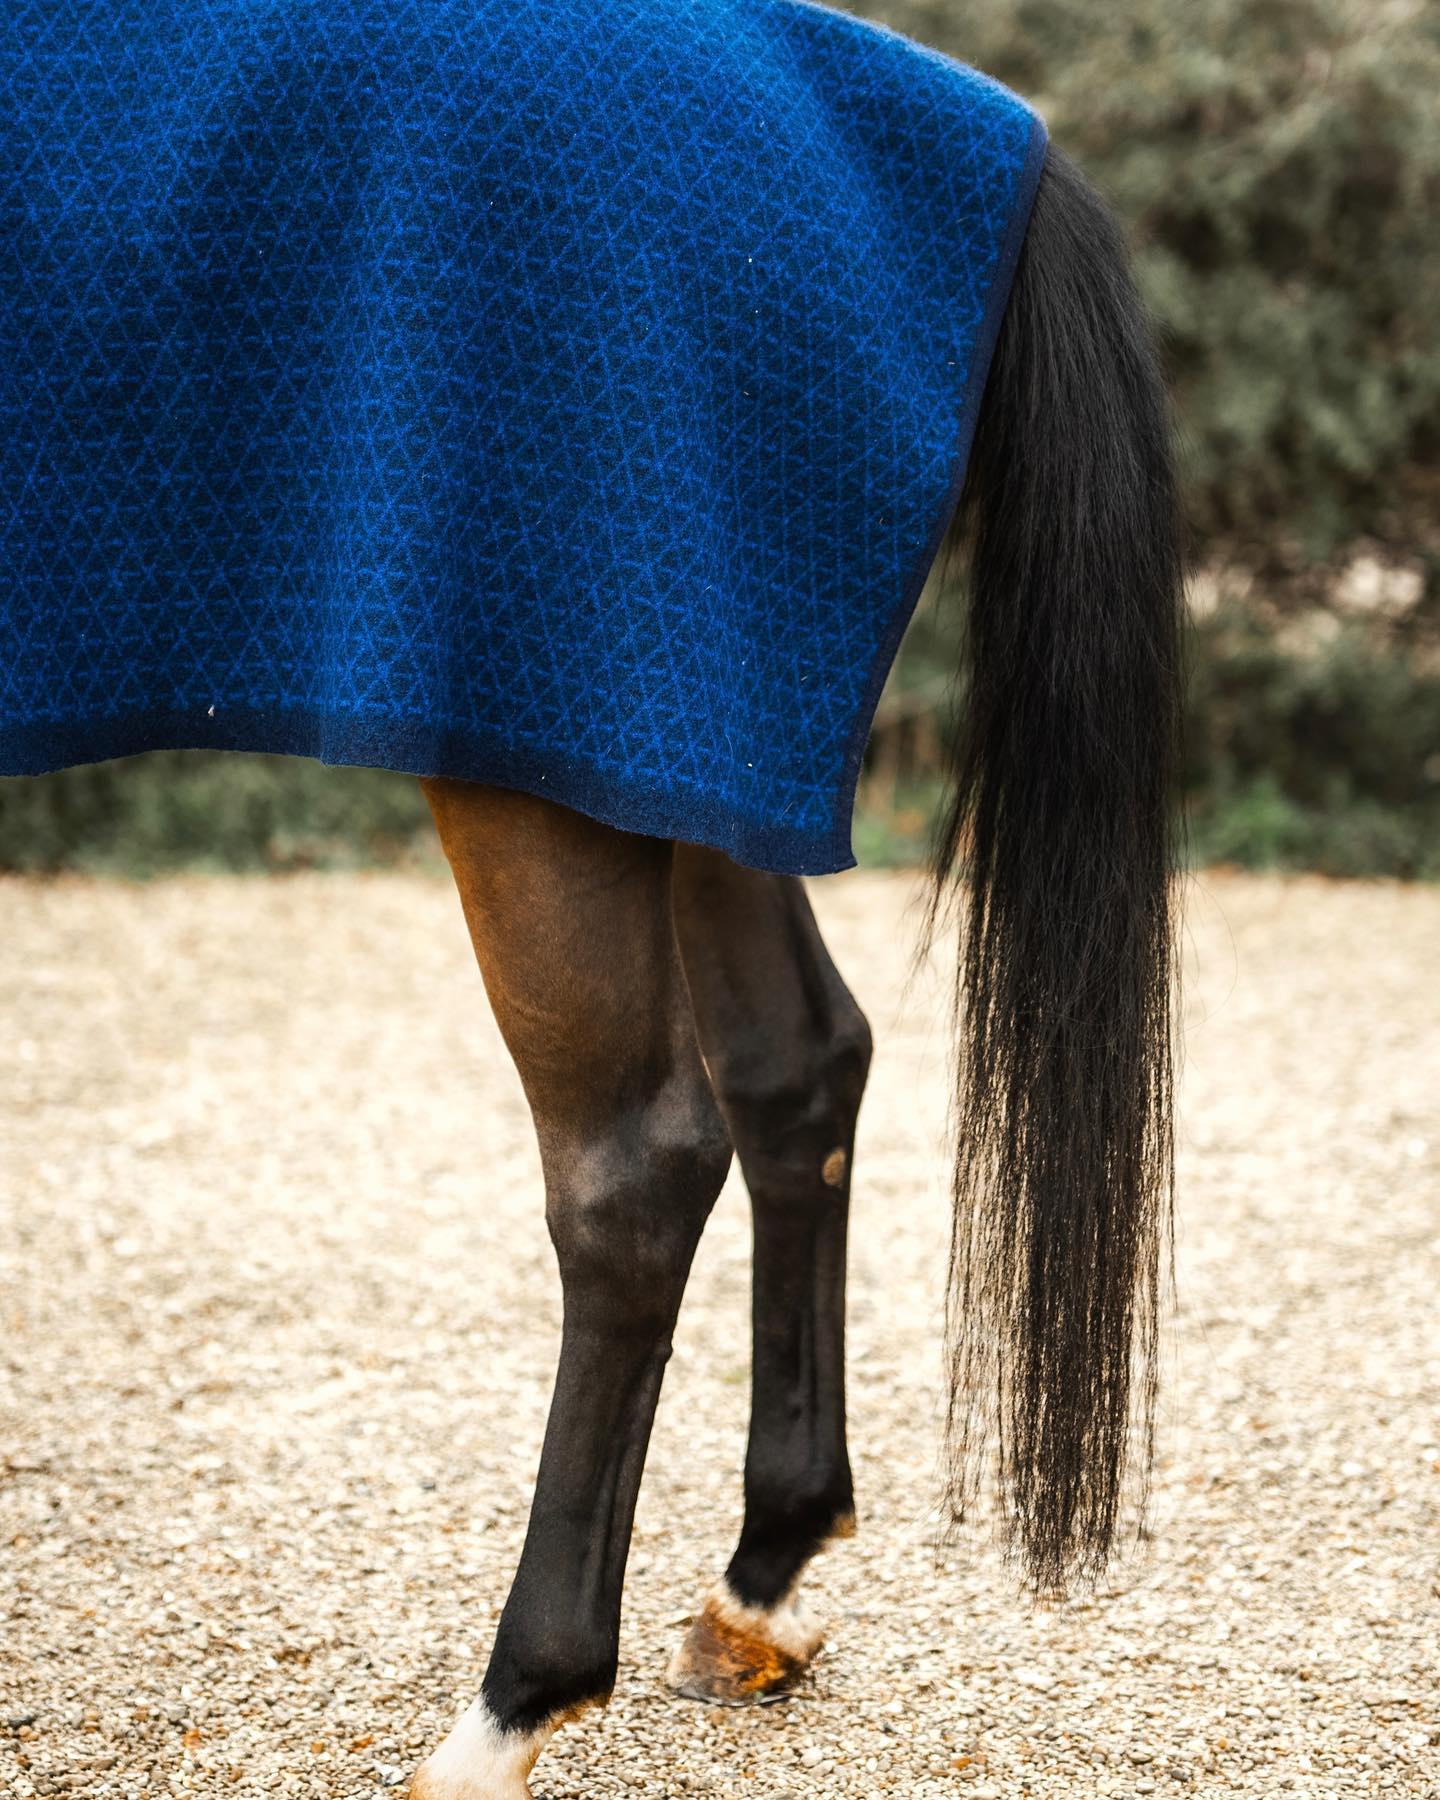 Pour les matins frisquets 🐑 🧶 🥶 
Carré de laine tricoté en France 🇫🇷. Disponible en bleu marine et bleu roi et noir et caramel sur Tacante.Com 
📸 @hpalprod 
//
#tacante #carreselaine #carredelaine #couverture #plaid #couvrereins #rug #horseriding #horserug #madeinfrance #laine #wool